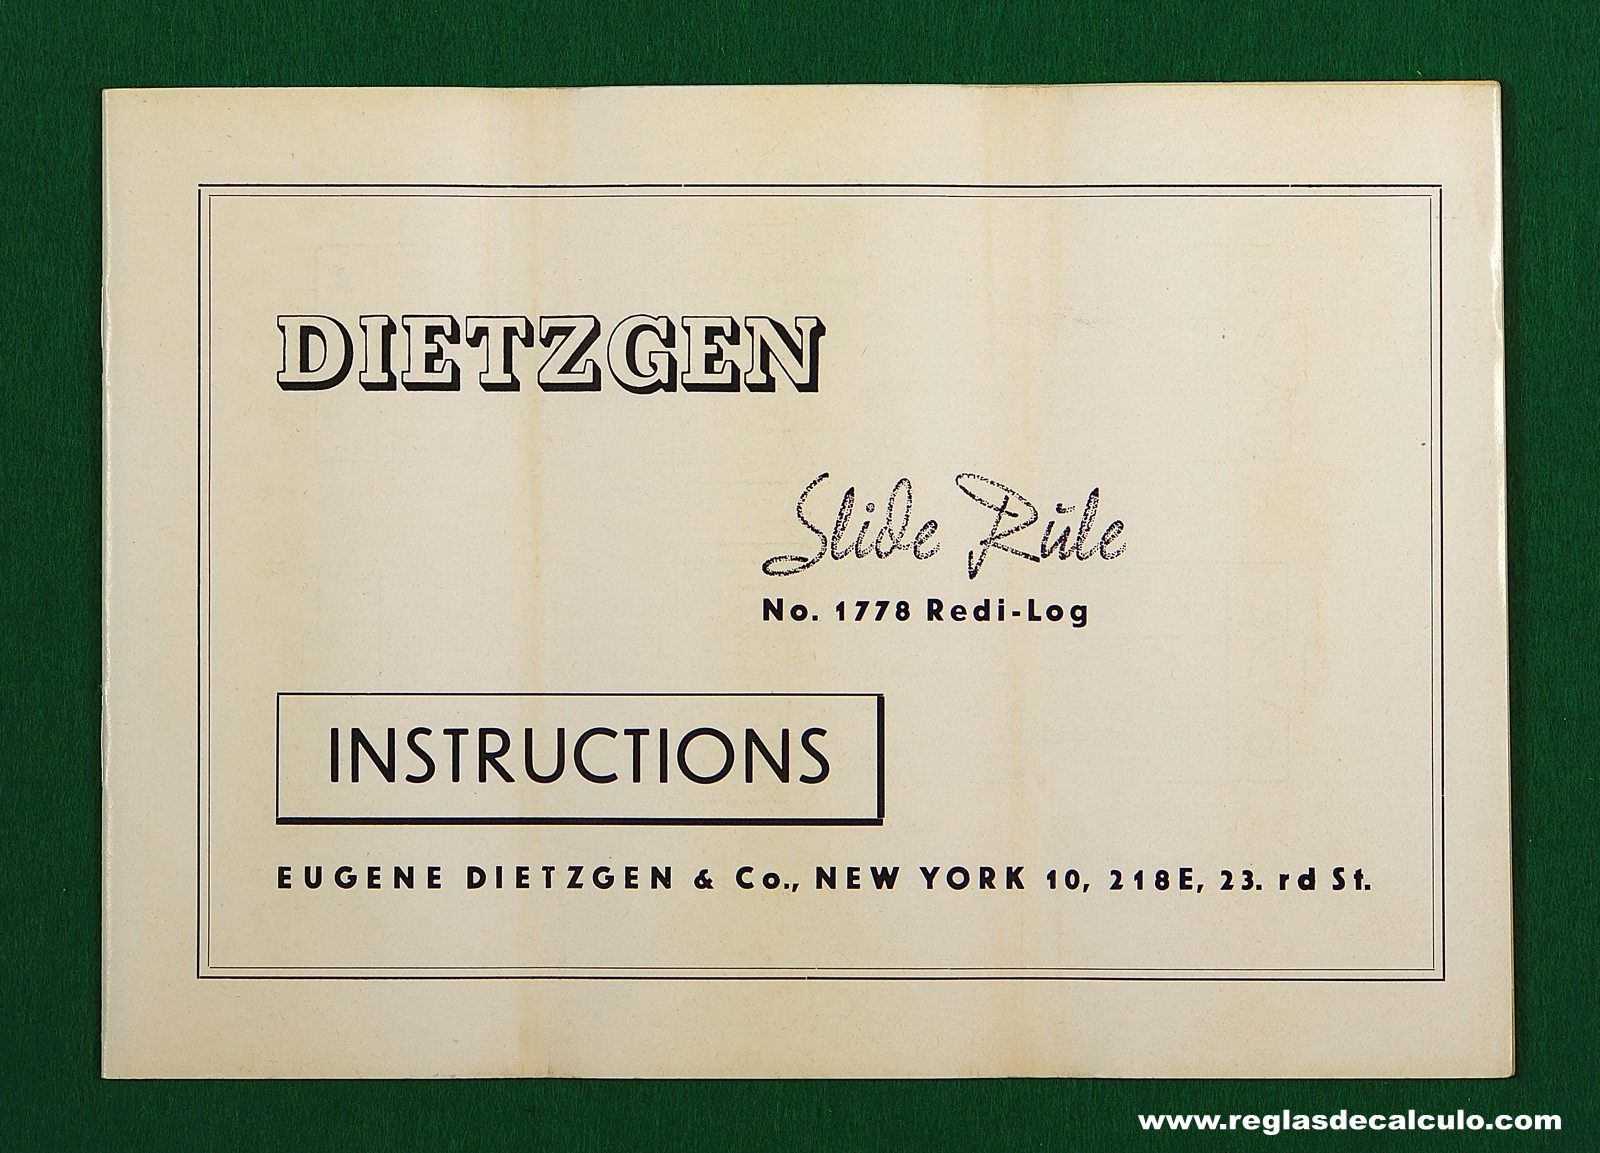 Regla de Calculo Slide rule Dietzgen 1733